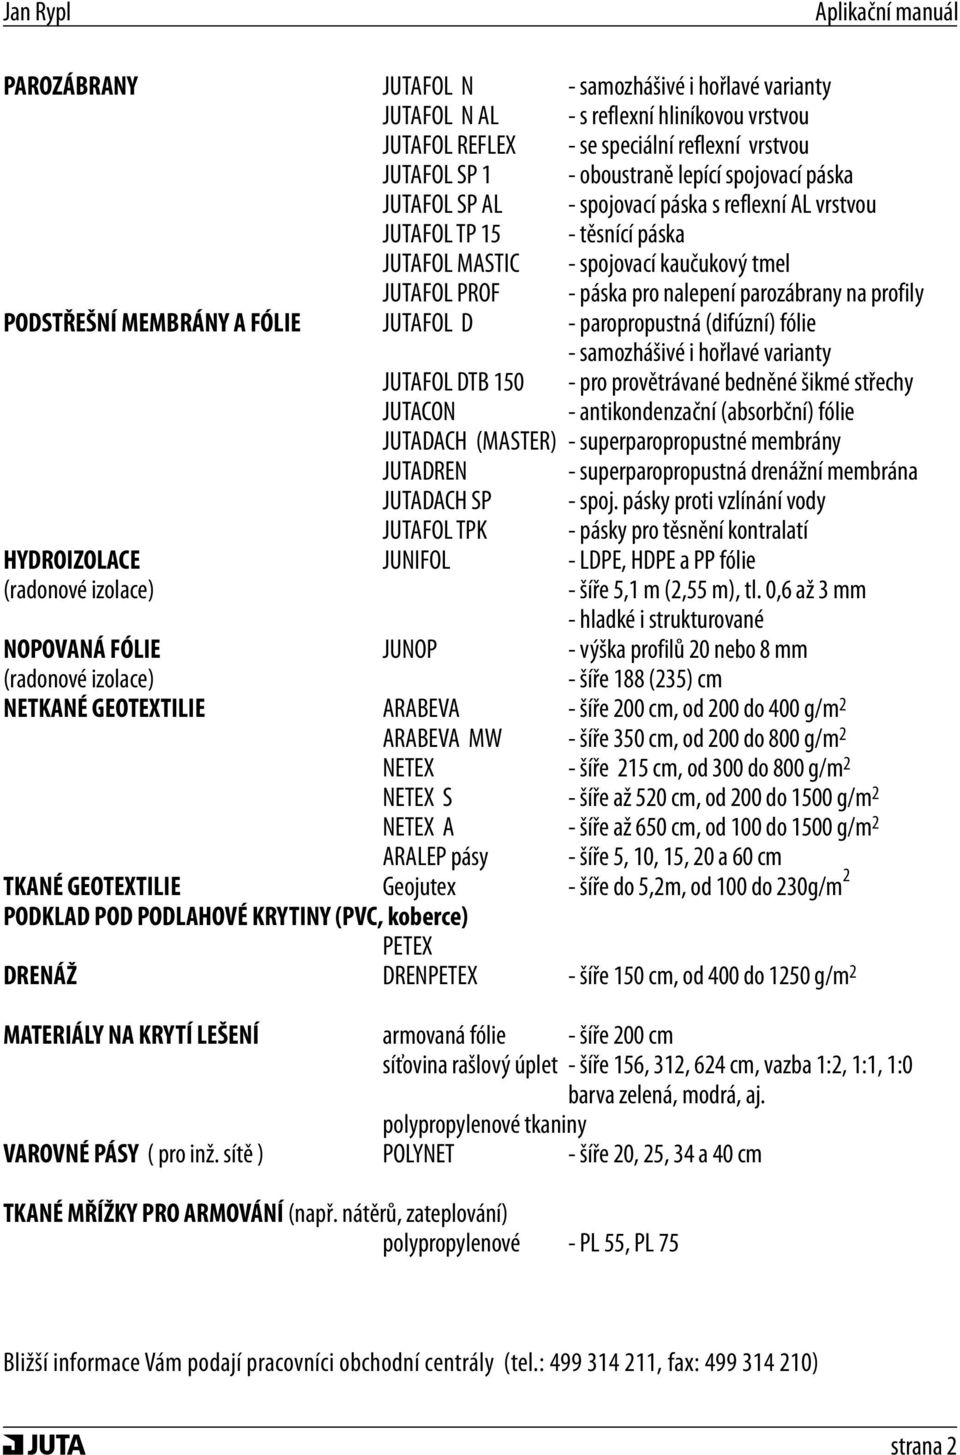 MEMBRÁNY A FÓLIE JUTAFOL D - paropropustná (difúzní) fólie - samozhášivé i hořlavé varianty JUTAFOL DTB 150 - pro provětrávané bedněné šikmé střechy JUTACON - antikondenzační (absorbční) fólie